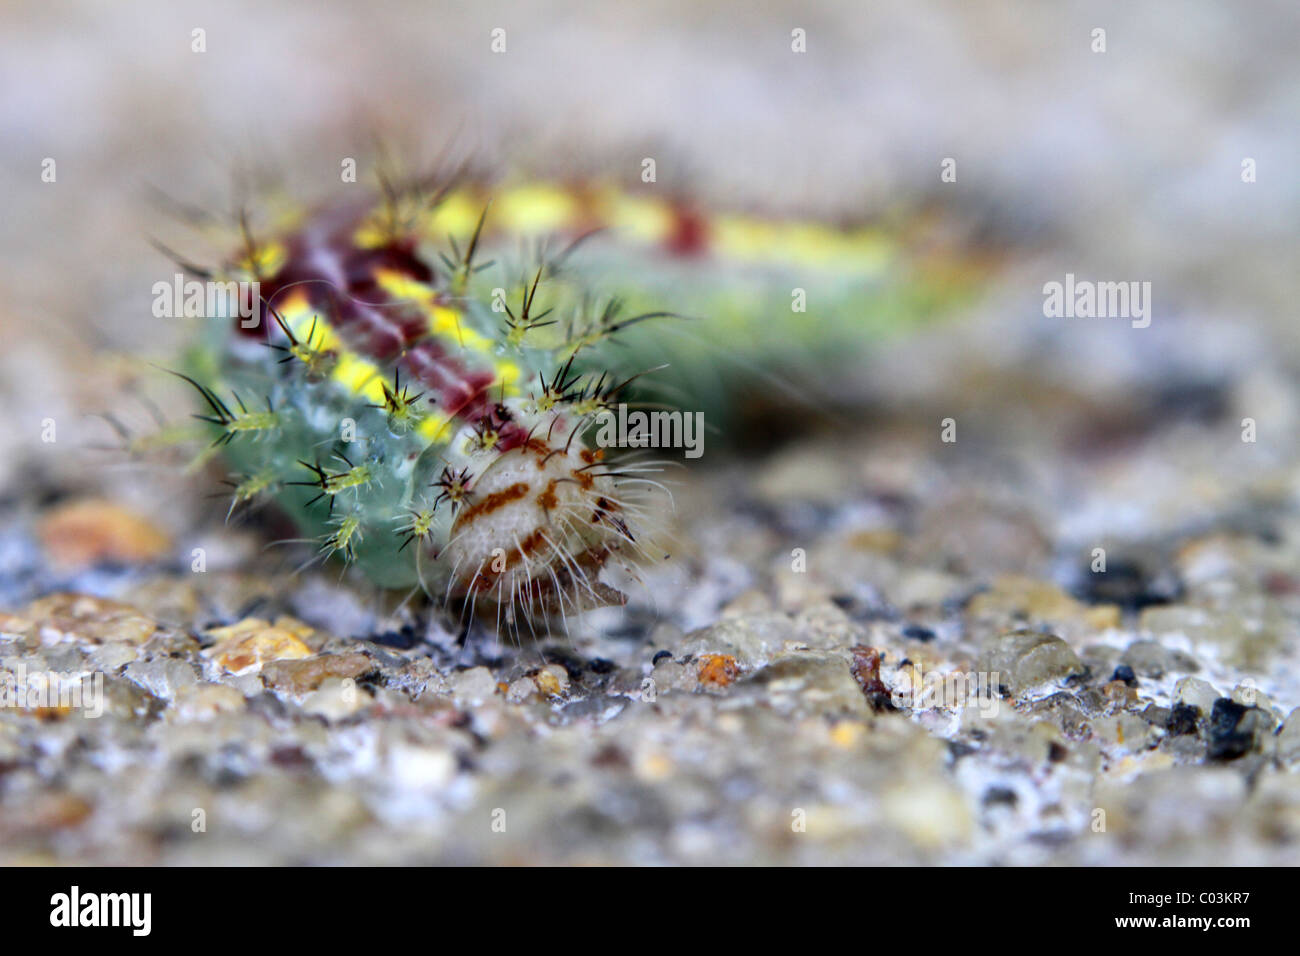 Indian caterpillar Stock Photo